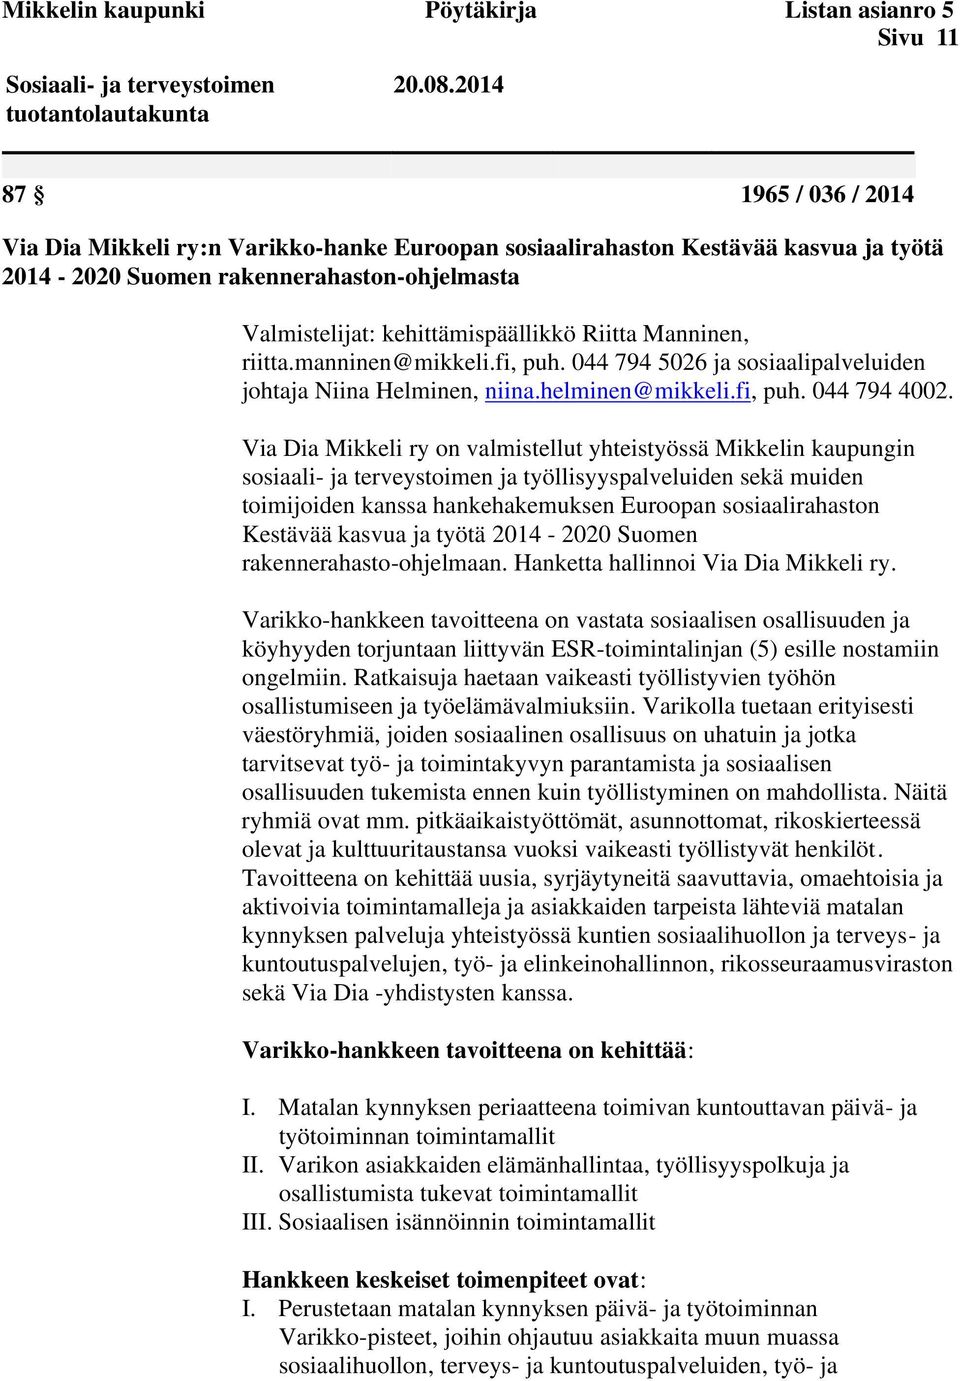 Manninen, riitta.manninen@mikkeli.fi, puh. 044 794 5026 ja sosiaalipalveluiden johtaja Niina Helminen, niina.helminen@mikkeli.fi, puh. 044 794 4002.